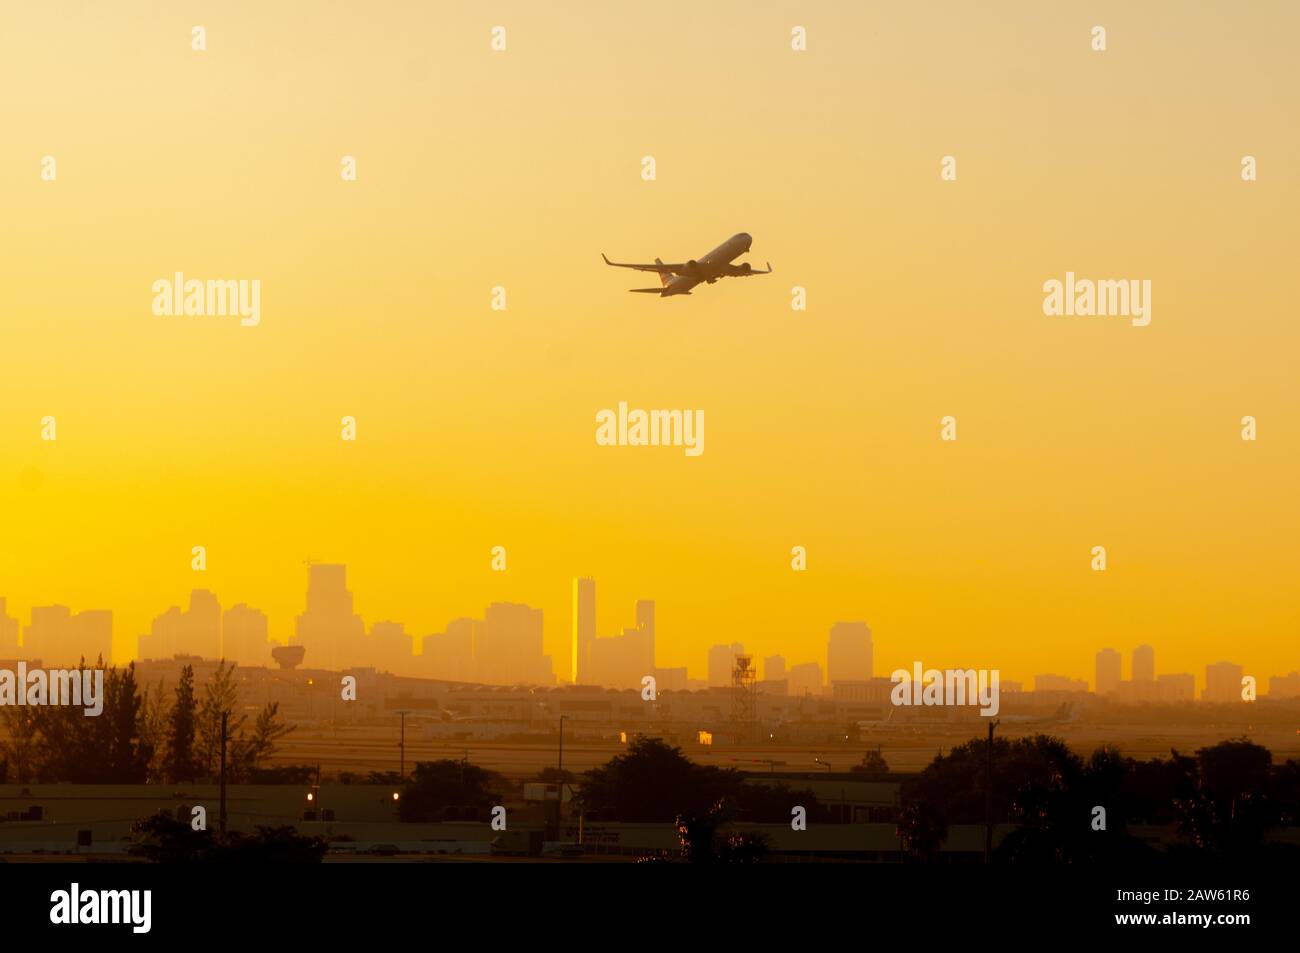 Beim Start vom Flughafen Miami mit der Stadt im Hintergrund wird ein Flugzeug vor einem farbenfrohen Sonnenaufgang in Gelb und Orange silhouettiert. Stockfoto